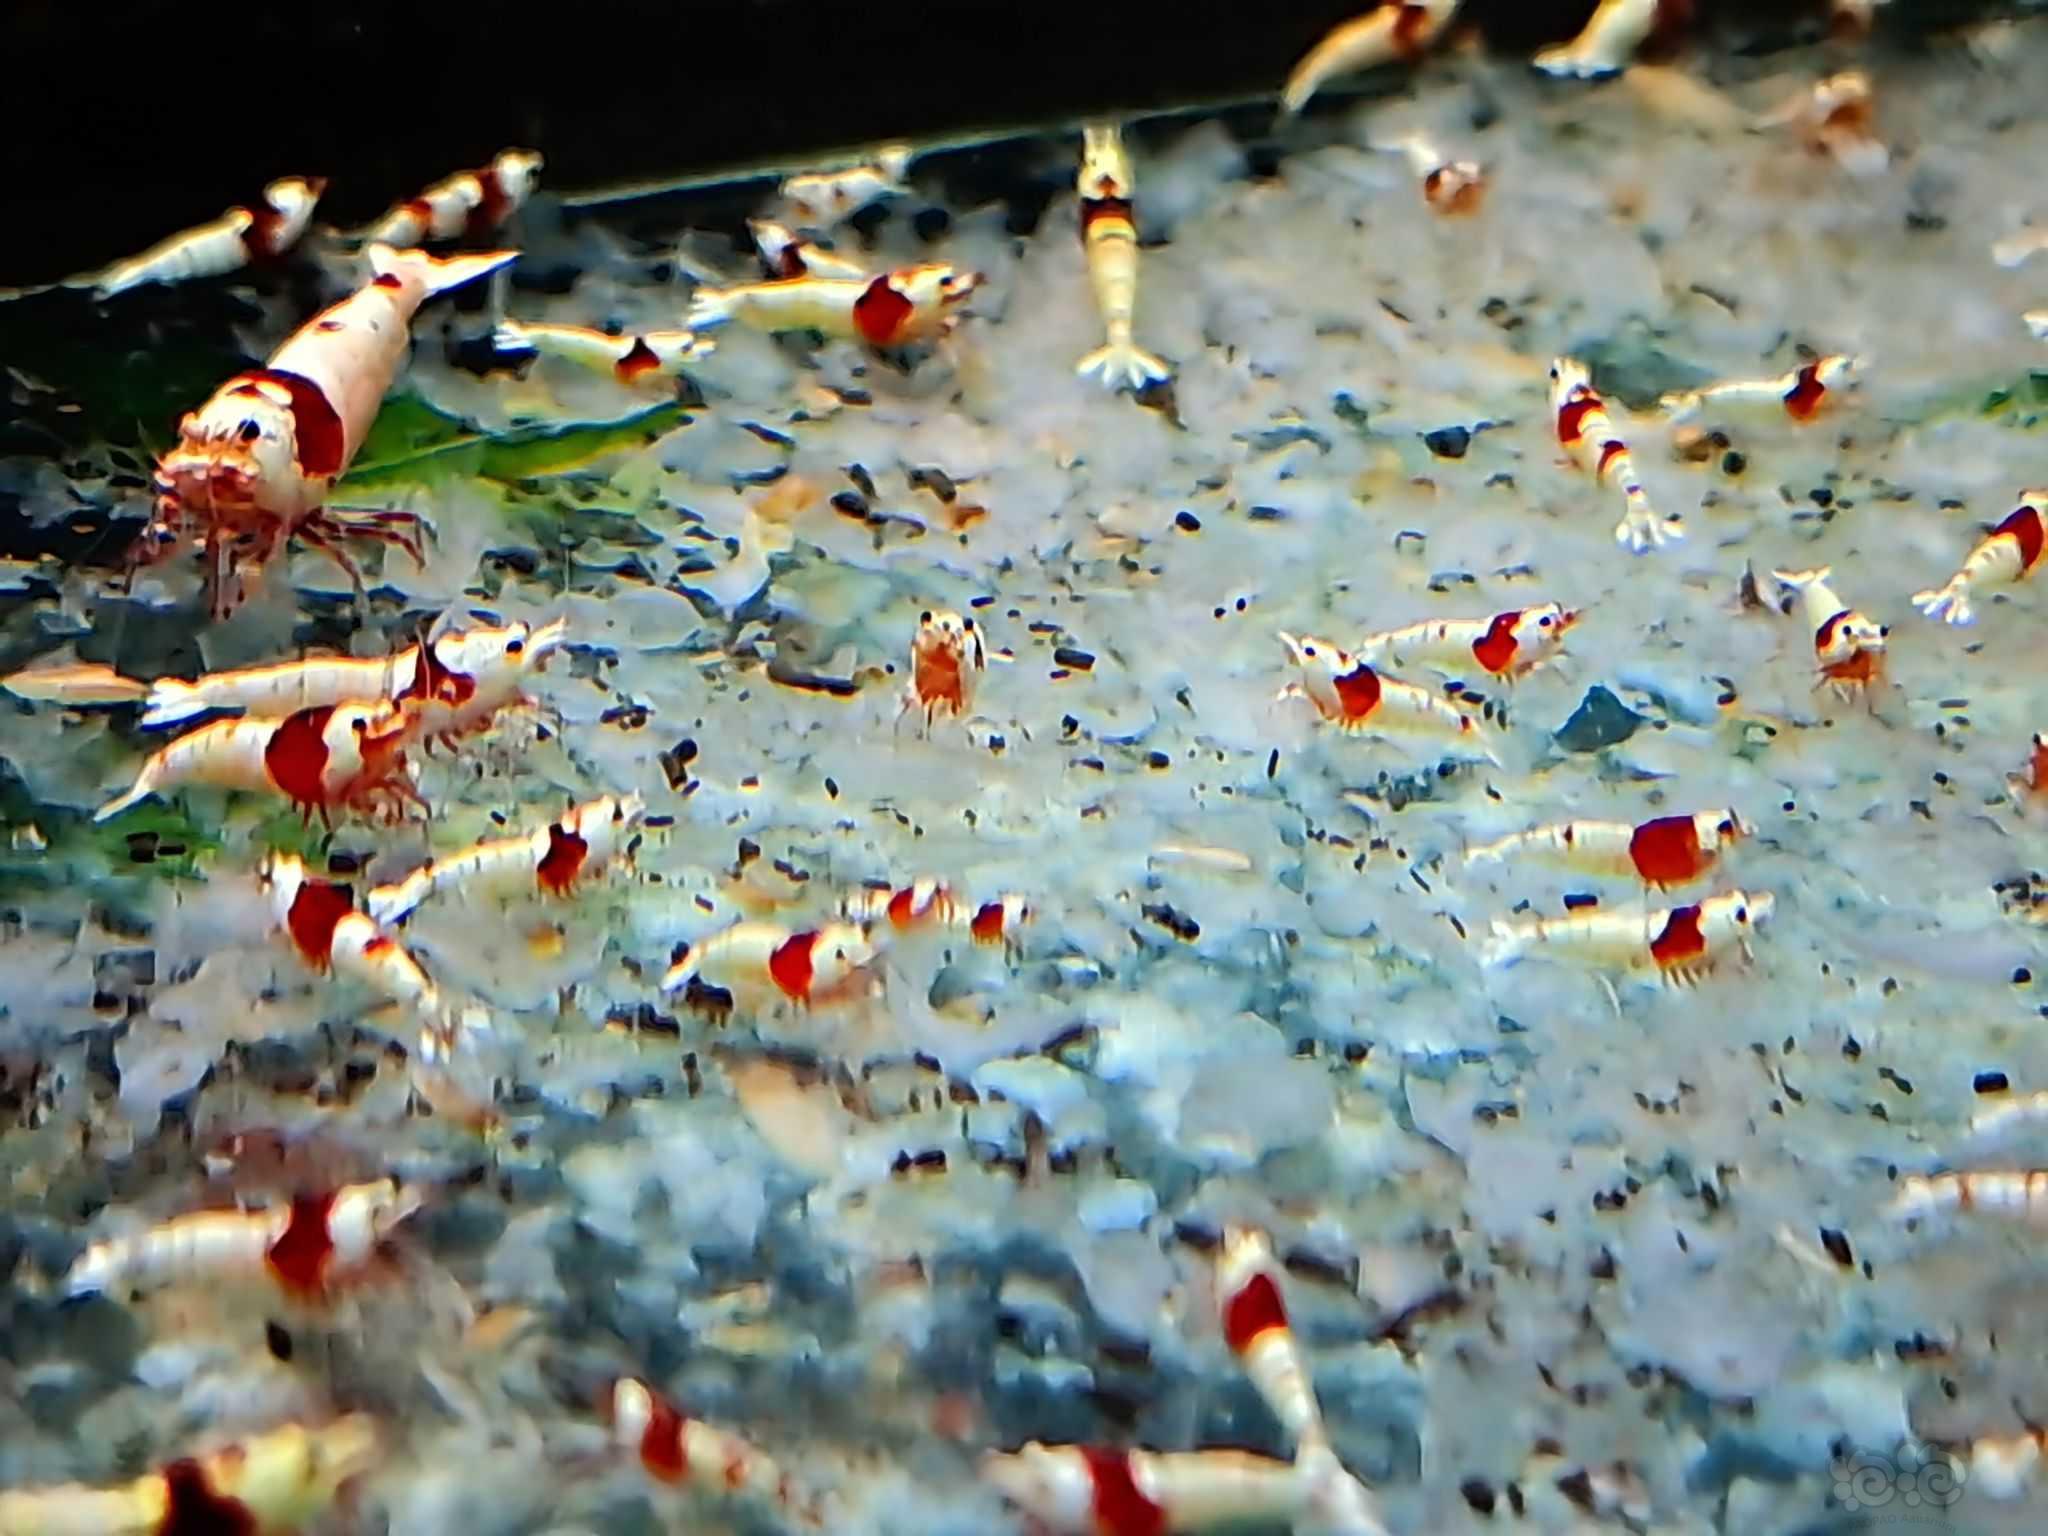 【水晶虾】出纯血红白5百只-图1